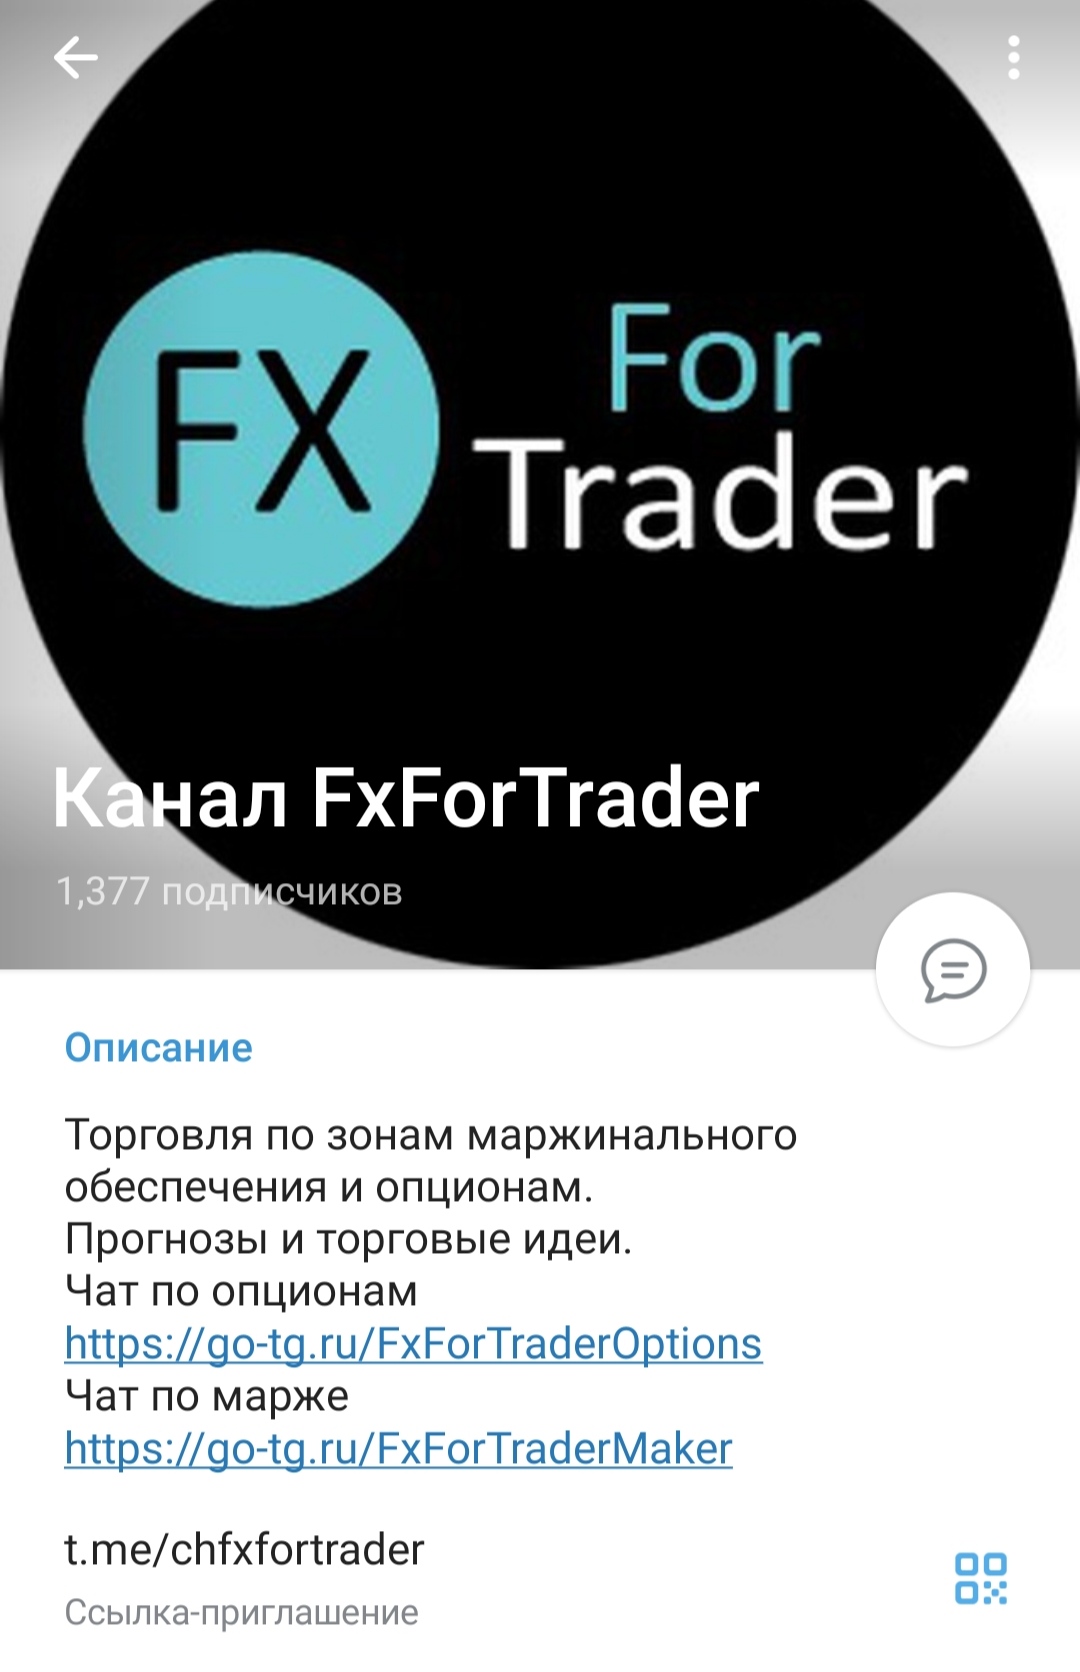 FX For Trader - телеграм